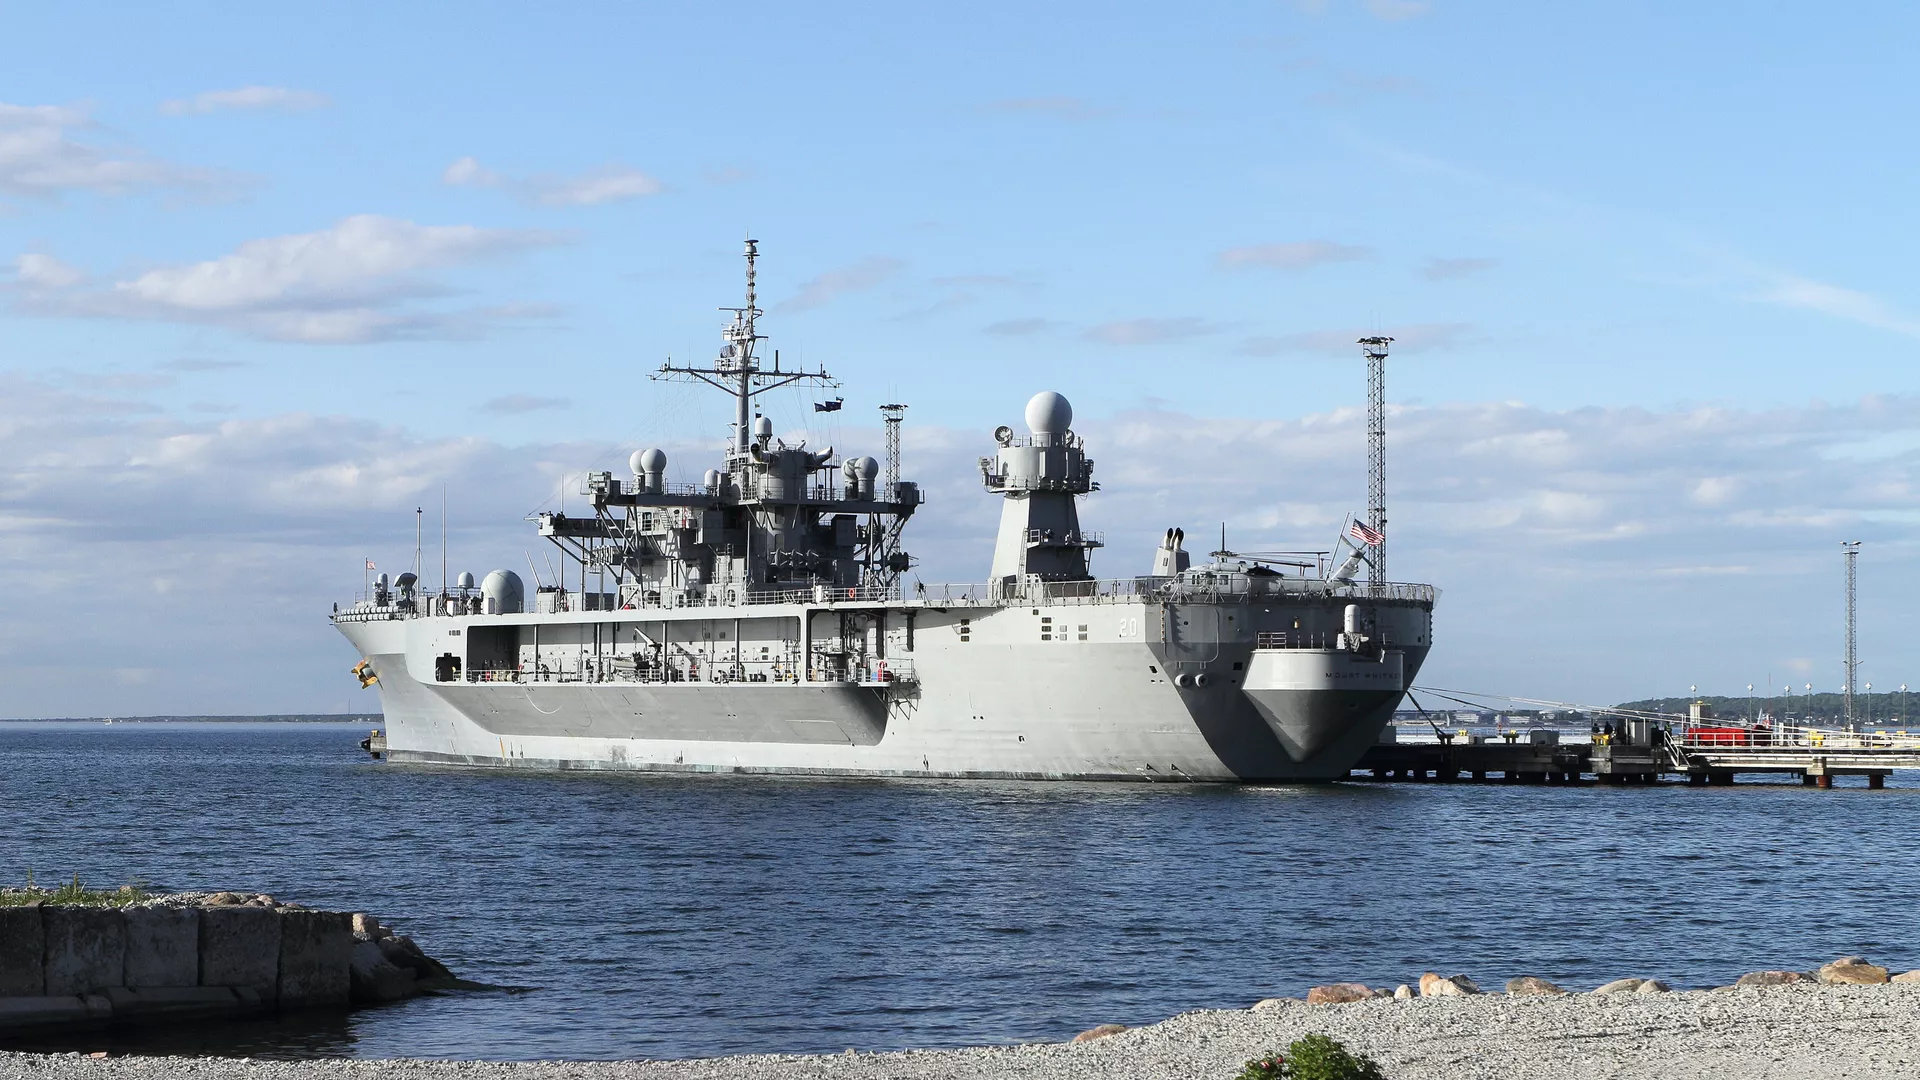 Флагманский корабль шестого флота США Mount Whitney, прибывший для участия в международных учениях ВМС НАТО Baltops, в порту Таллина. Июнь 2016 года  - РИА Новости, 1920, 01.11.2021